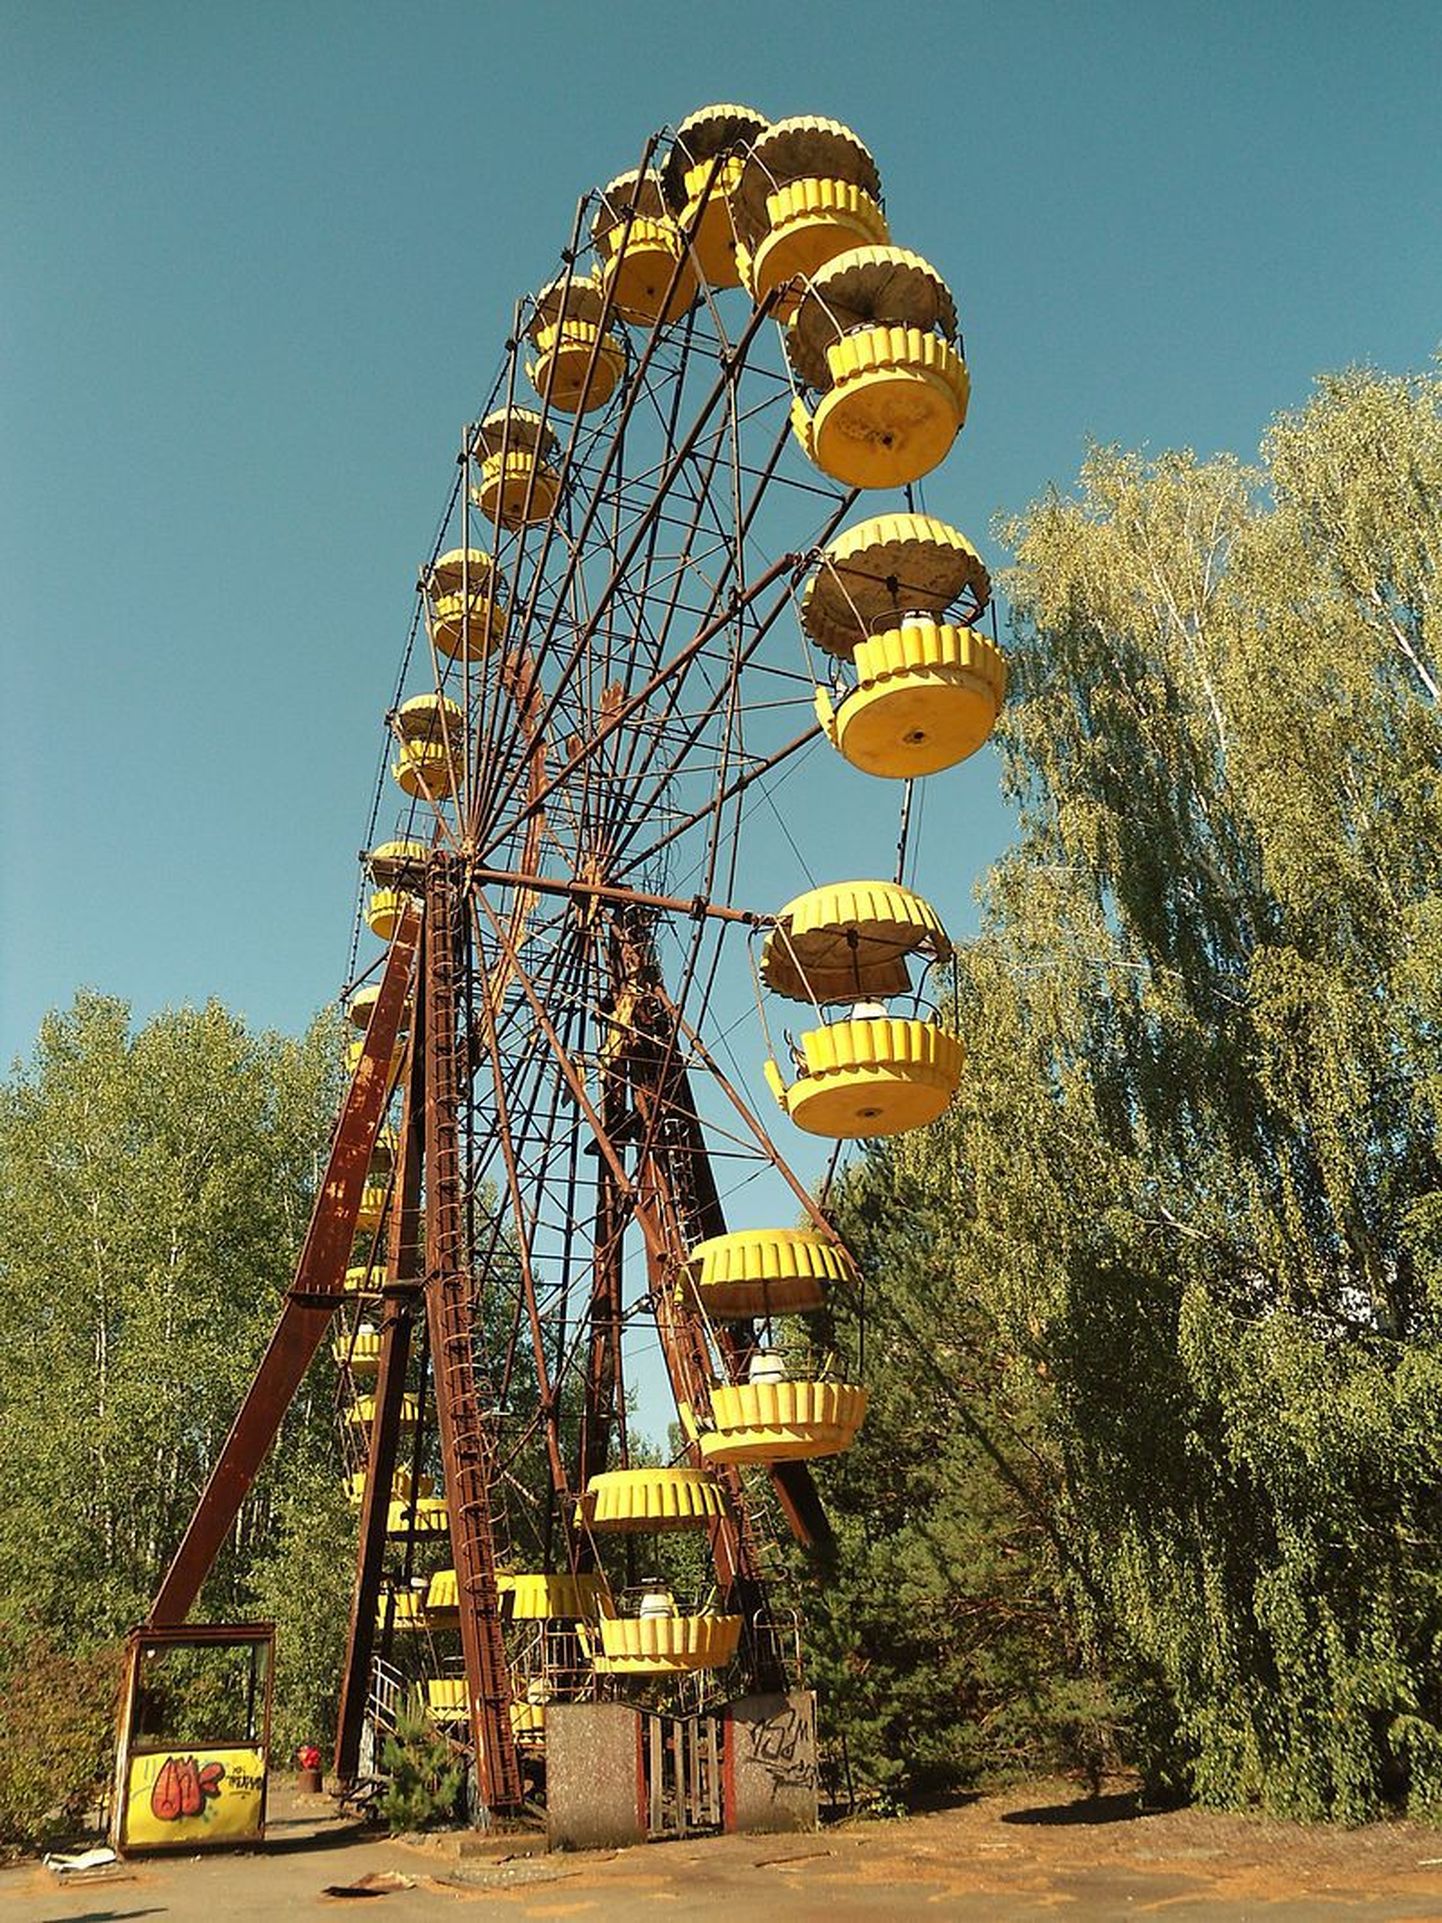 Pripjati lõbustuspark, Pripjat, Ukraina
Lõbustuspark pidi avatama mais 1986, et tähistada Nõukogude maipühi. Plaanid aga muutusid tänu Tšernobõli katastroofile - vaid mõned kilomeetrid eemal. Lõbustusparki ei avatudki, kuid sellest on saanud üks tuumakatastroofi sümboleid.